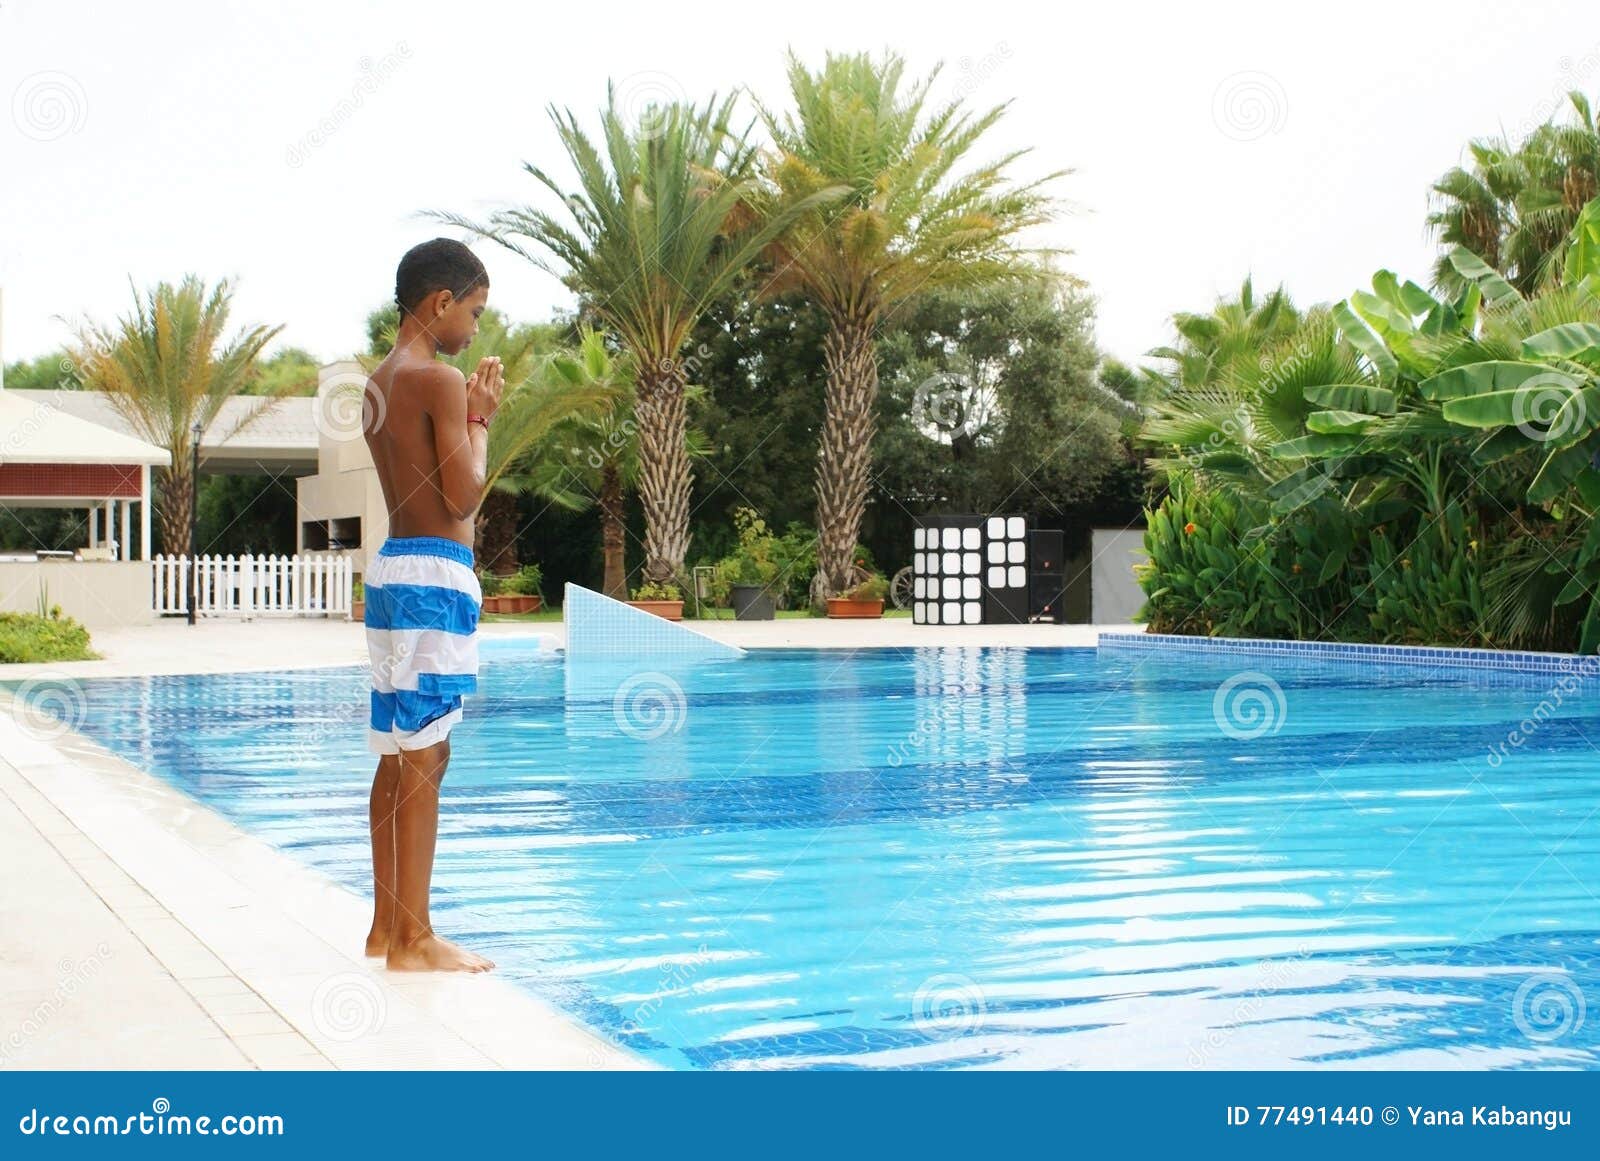 Garçon à la piscine photo stock. Image du beau, bouclé - 77491440